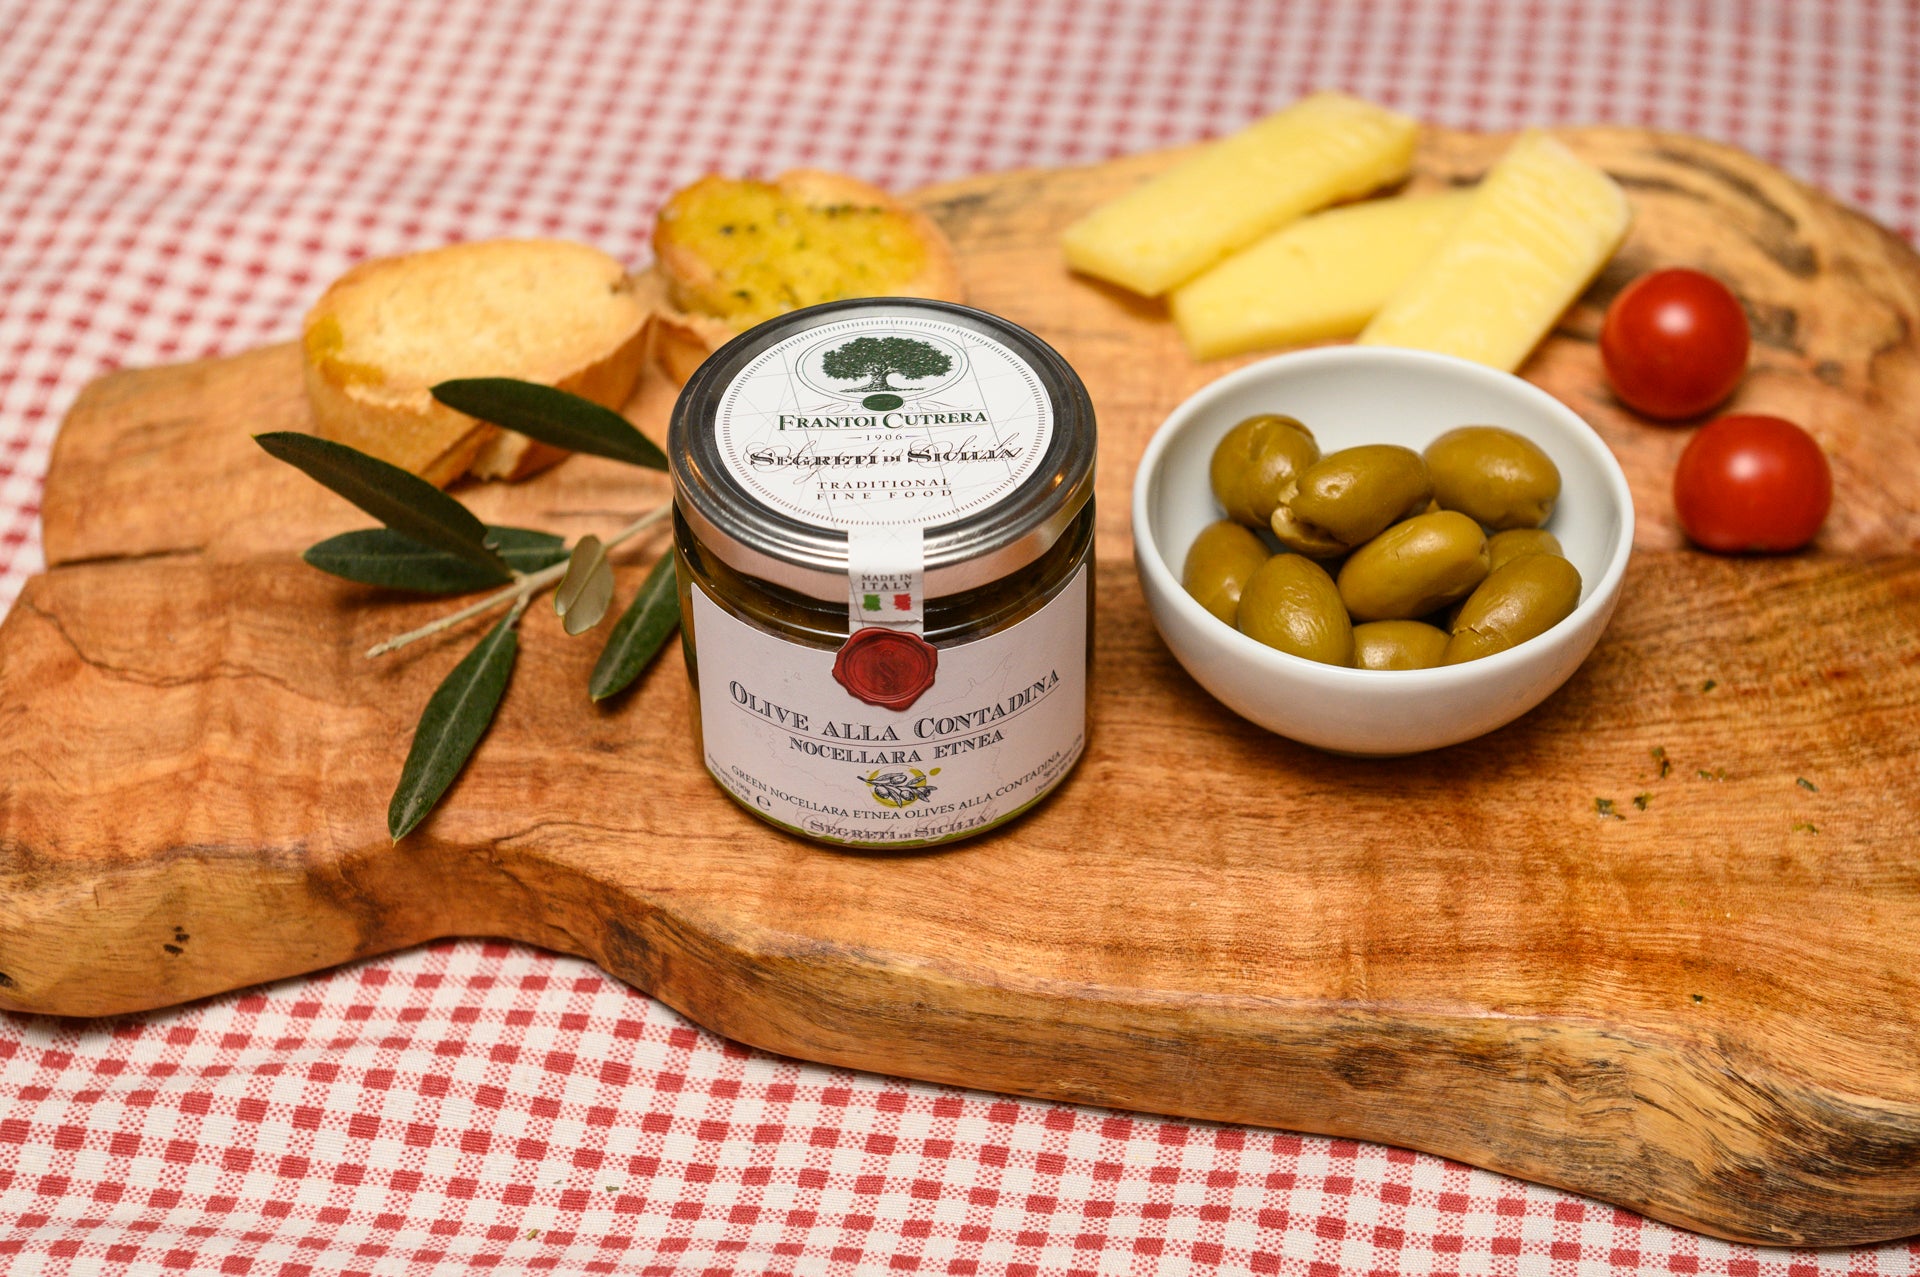 Olive alla contadina – Segreti di Sicilia